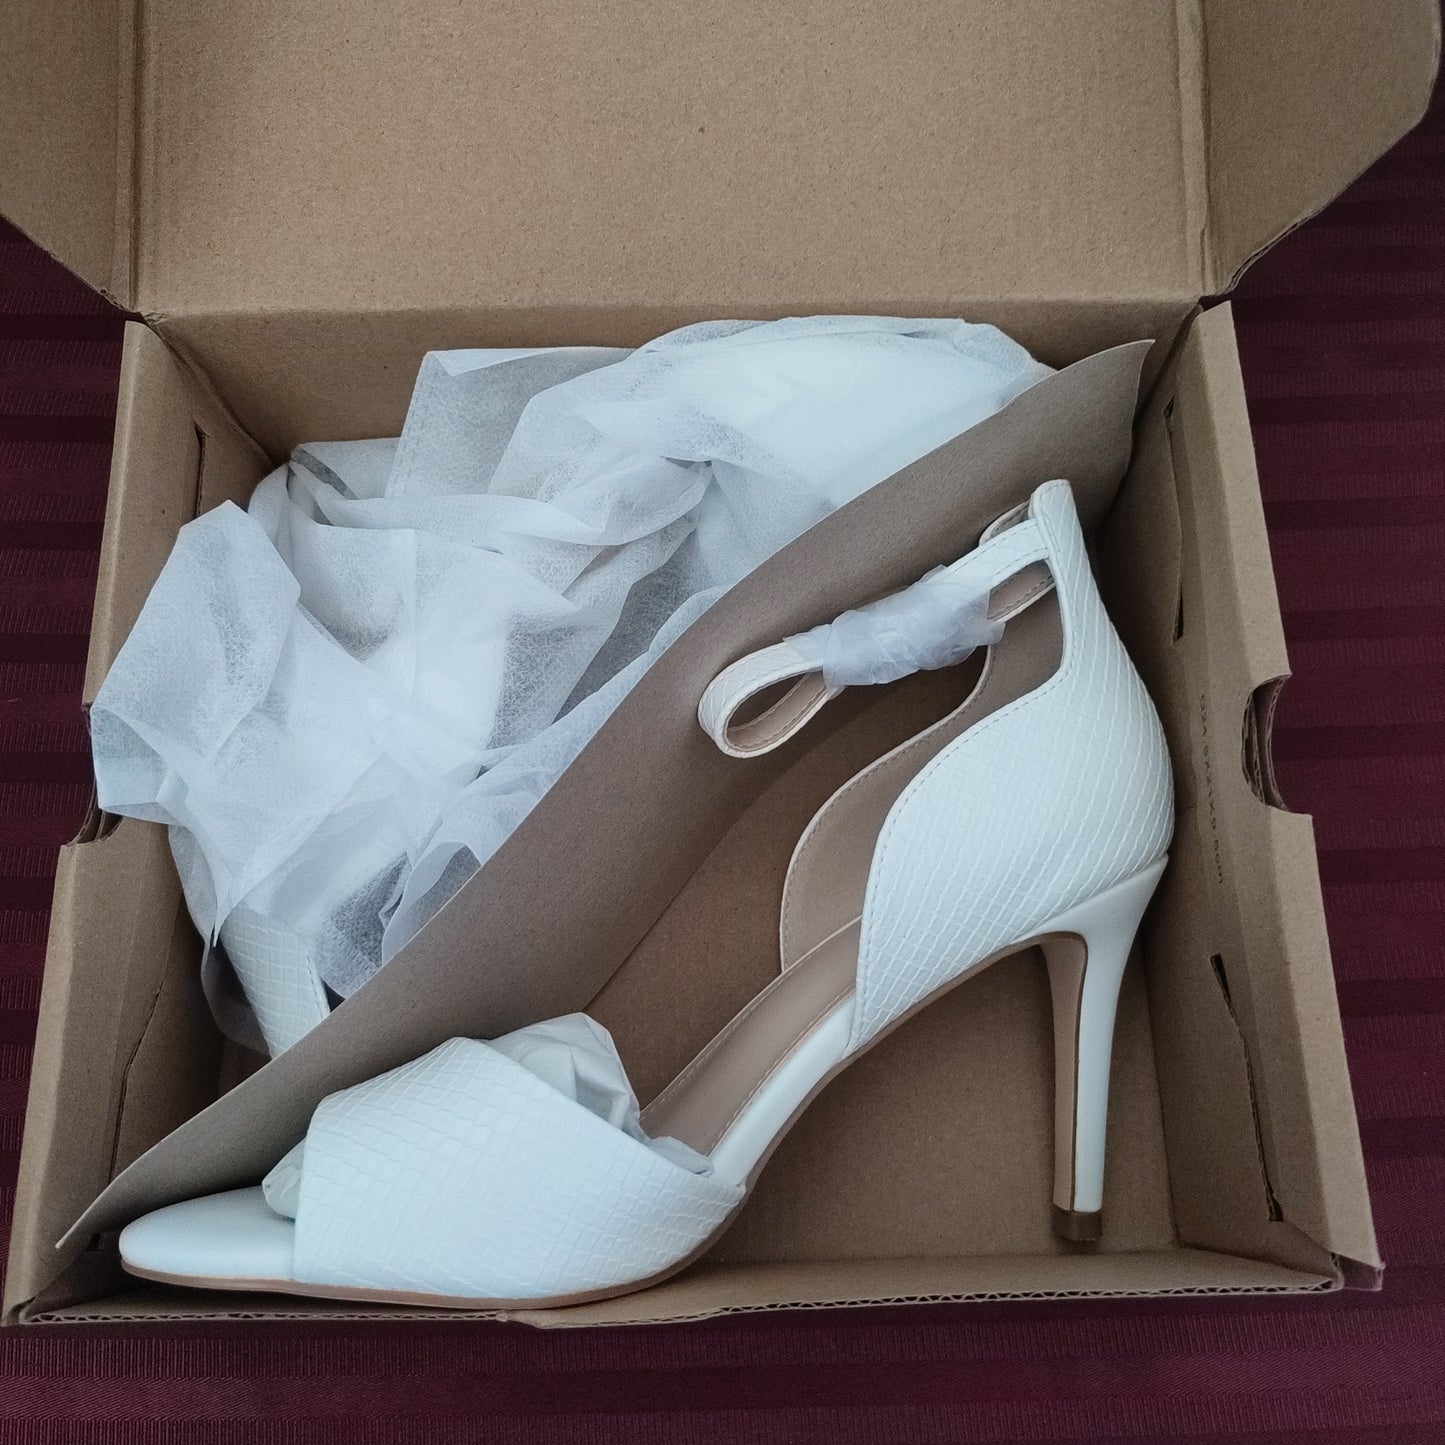 Zapatillas color blanco talla 7 1/2 US (24.5 cm) - Coutgo (Nuevo)